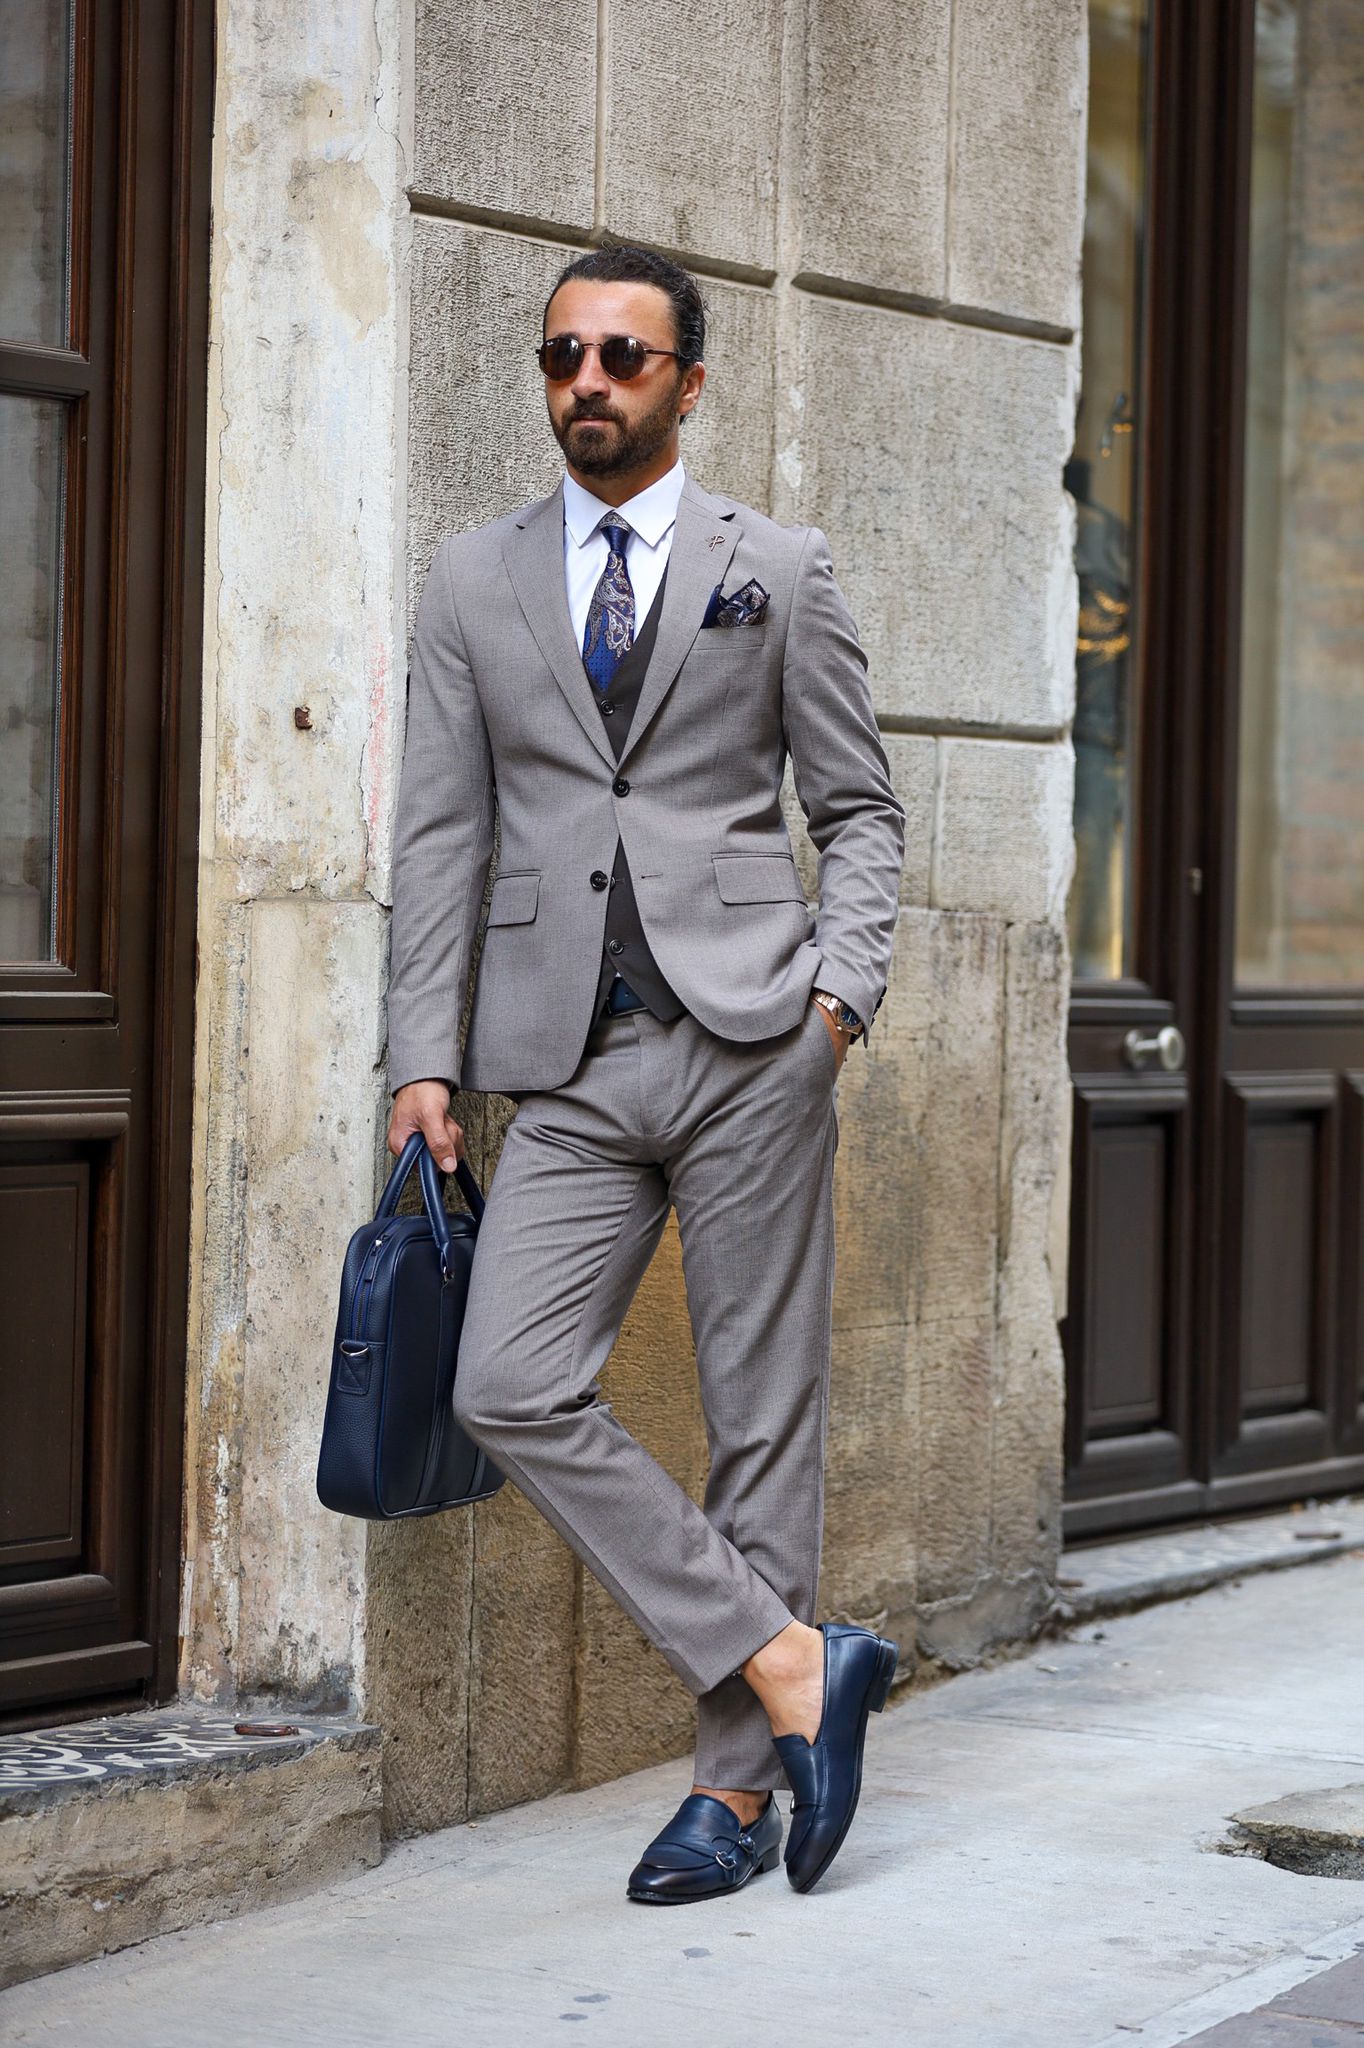 Heritage Classic: Blue Premium Polyester Men's Trousers – Antonios